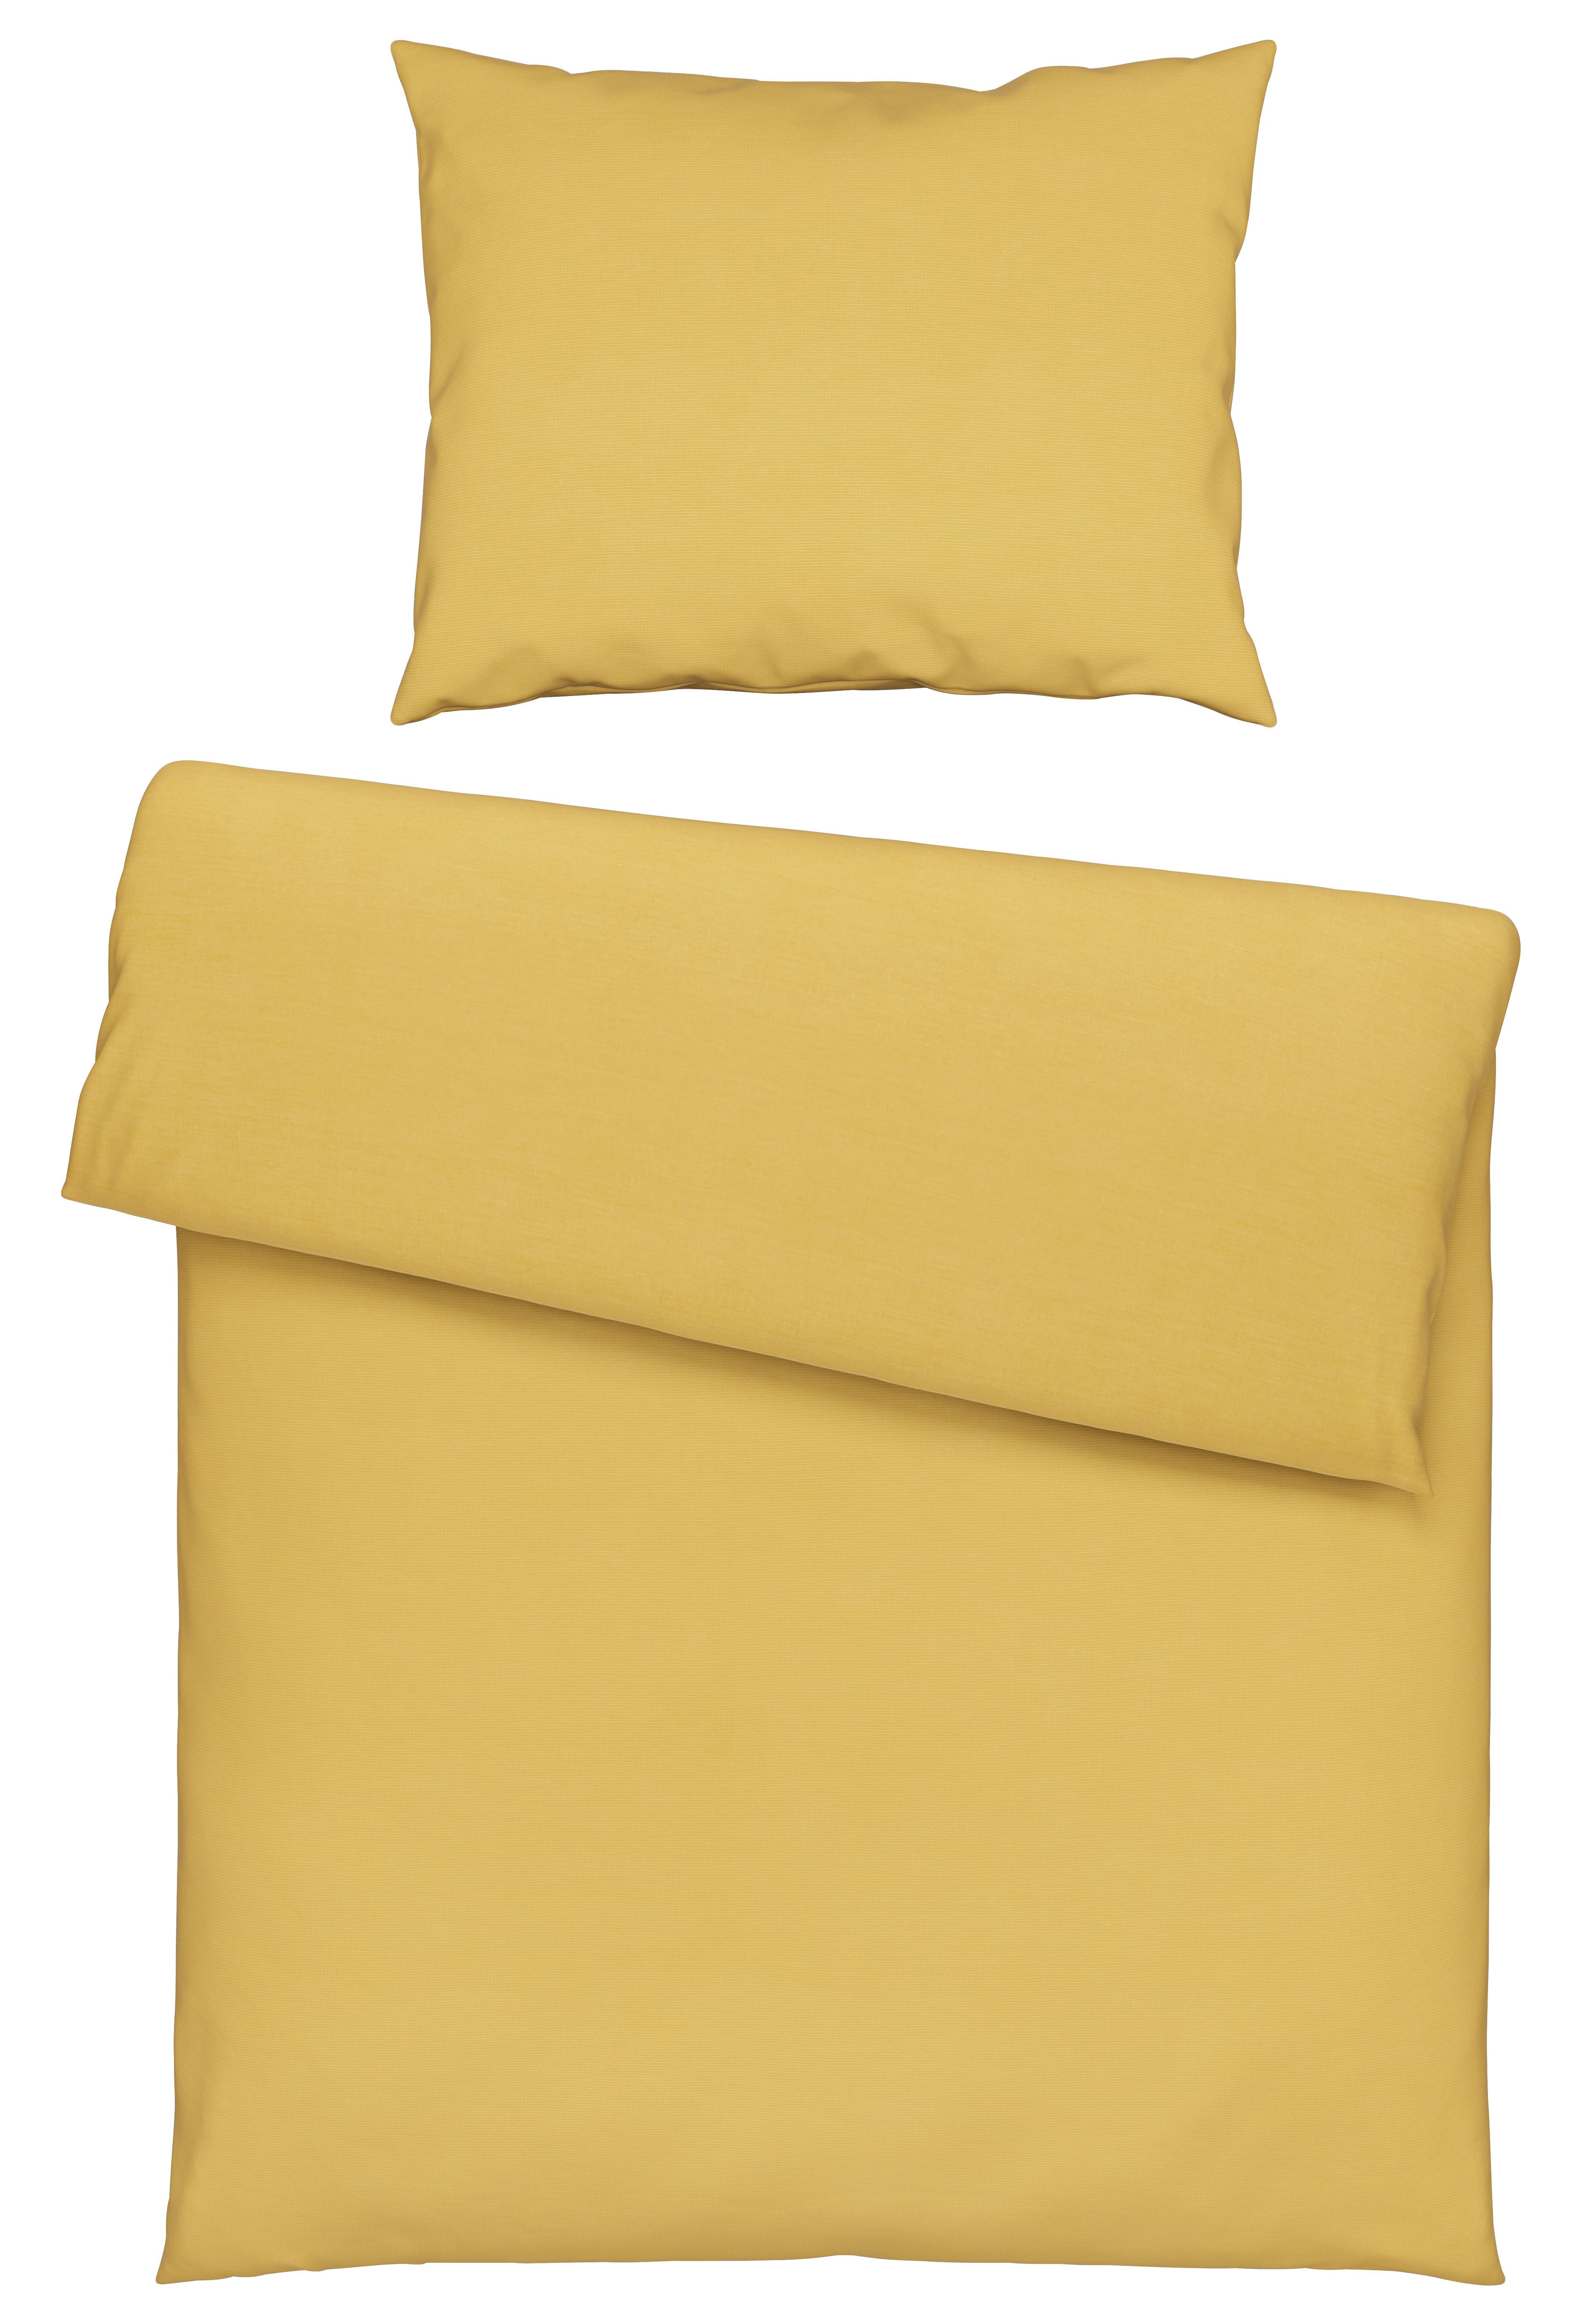 Povlečení Waffel, 140/200cm, Žlutá - žlutá, Moderní, textil (140/200cm) - Modern Living